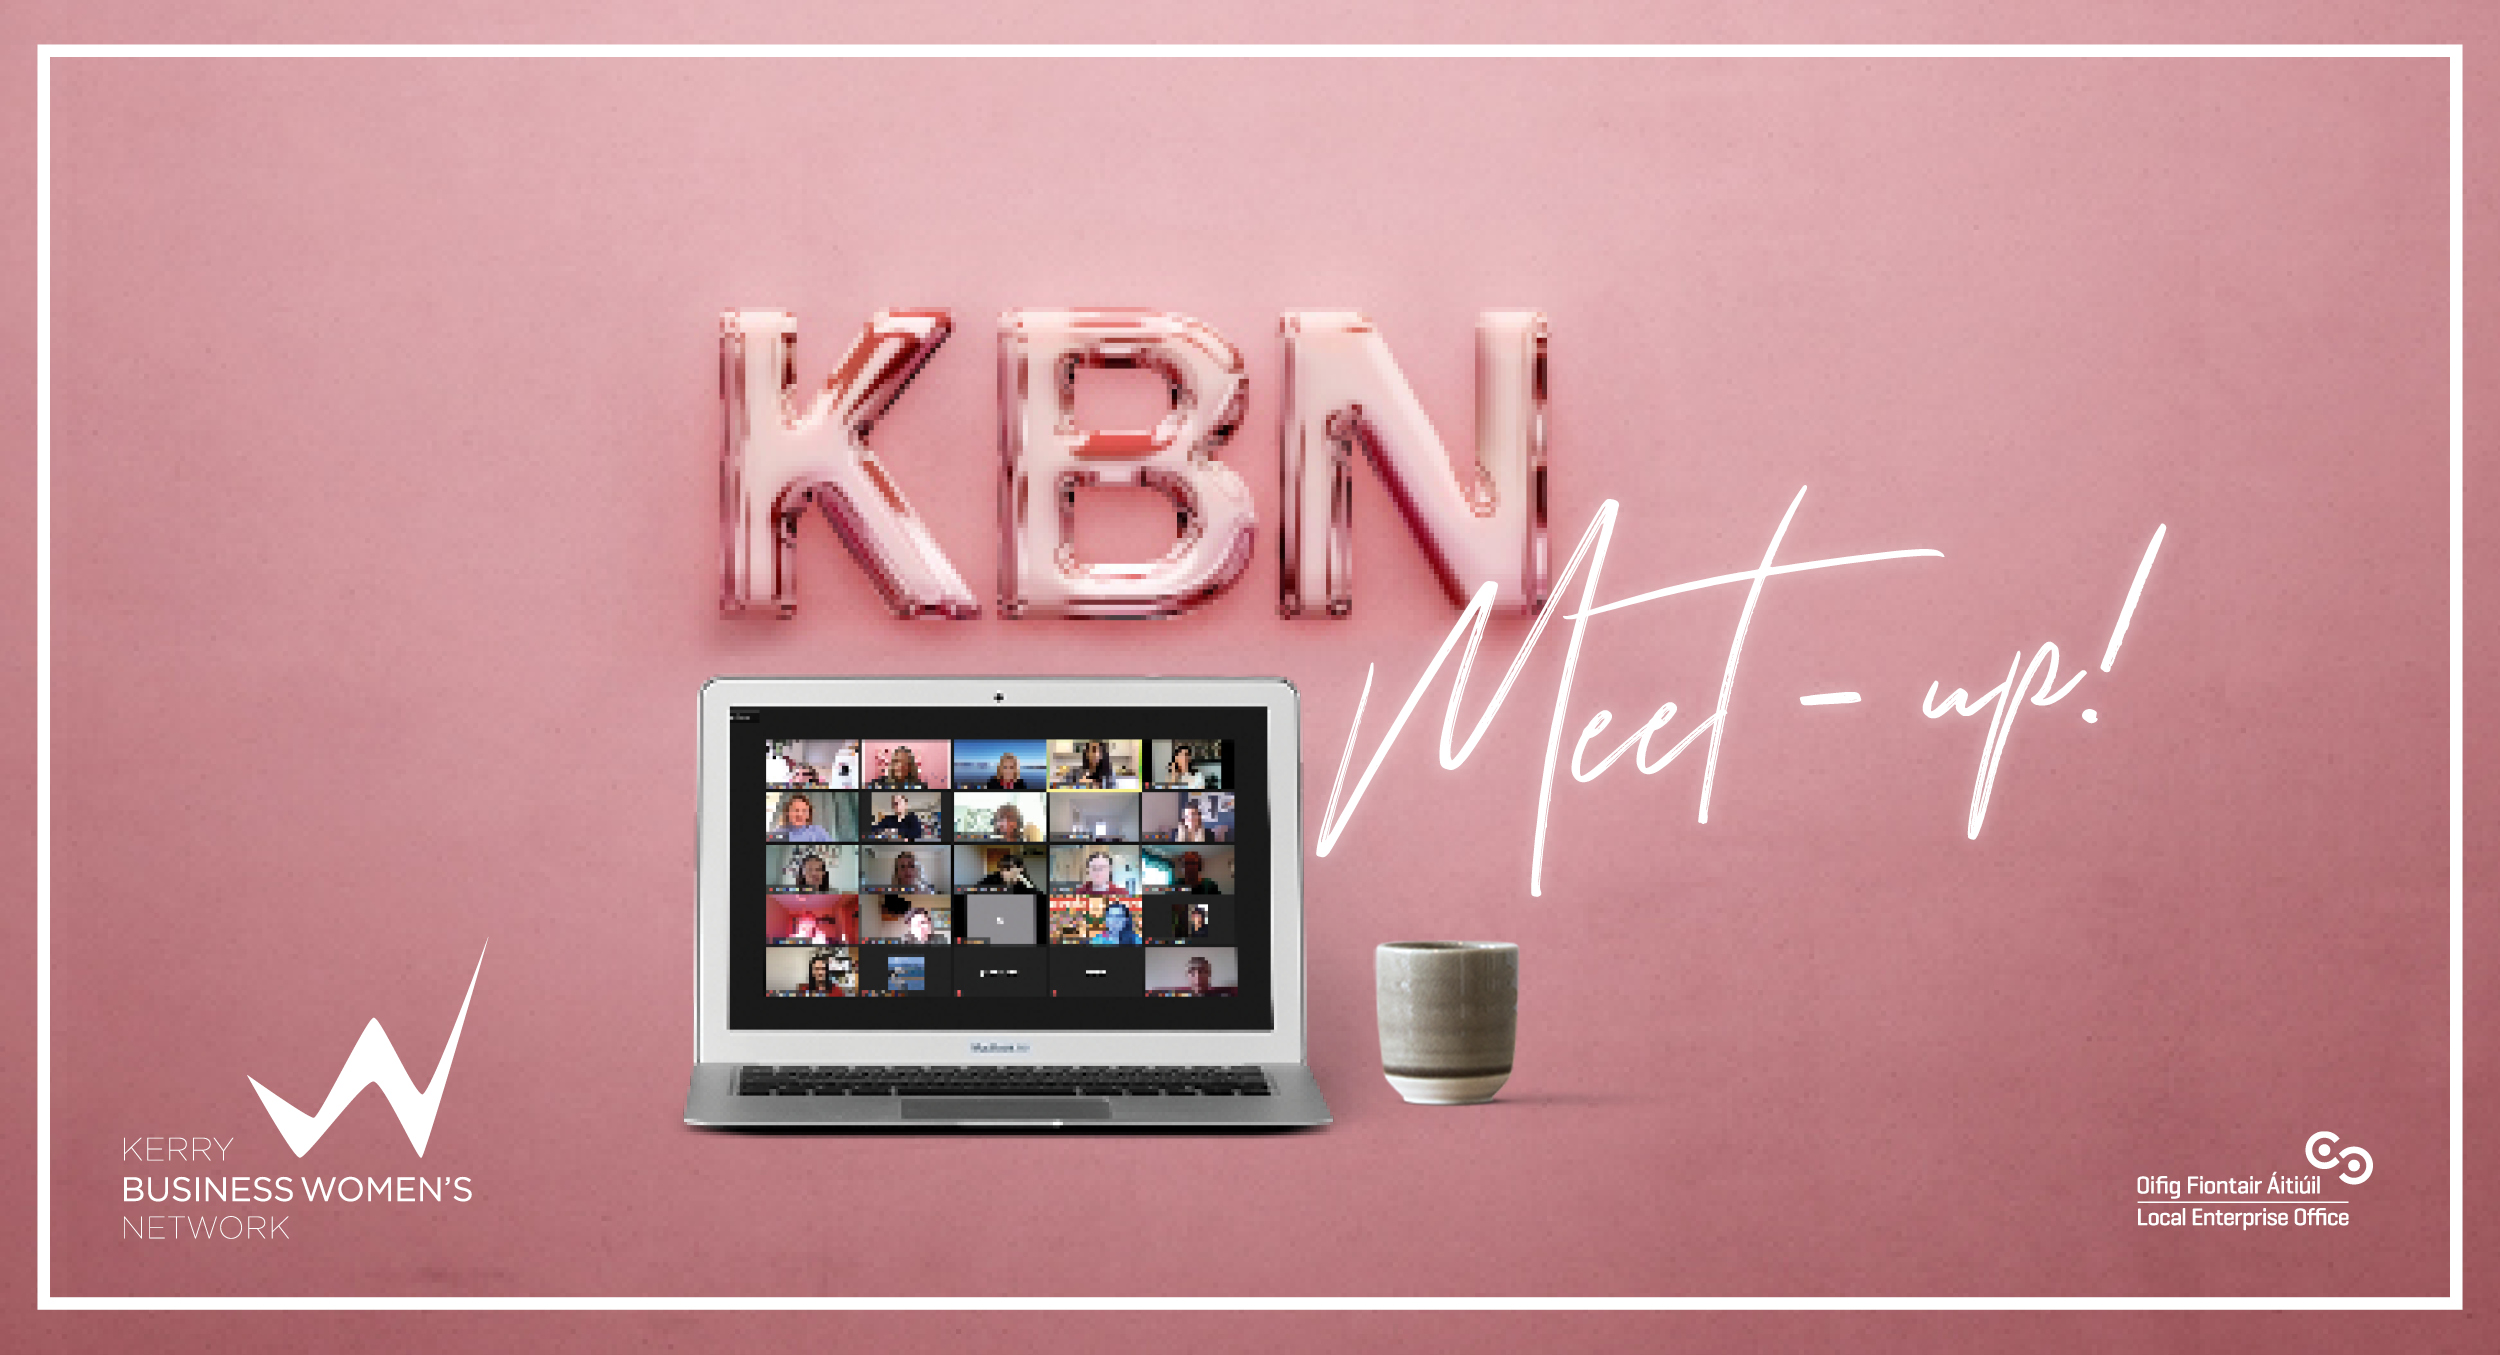 KBN April meet-up